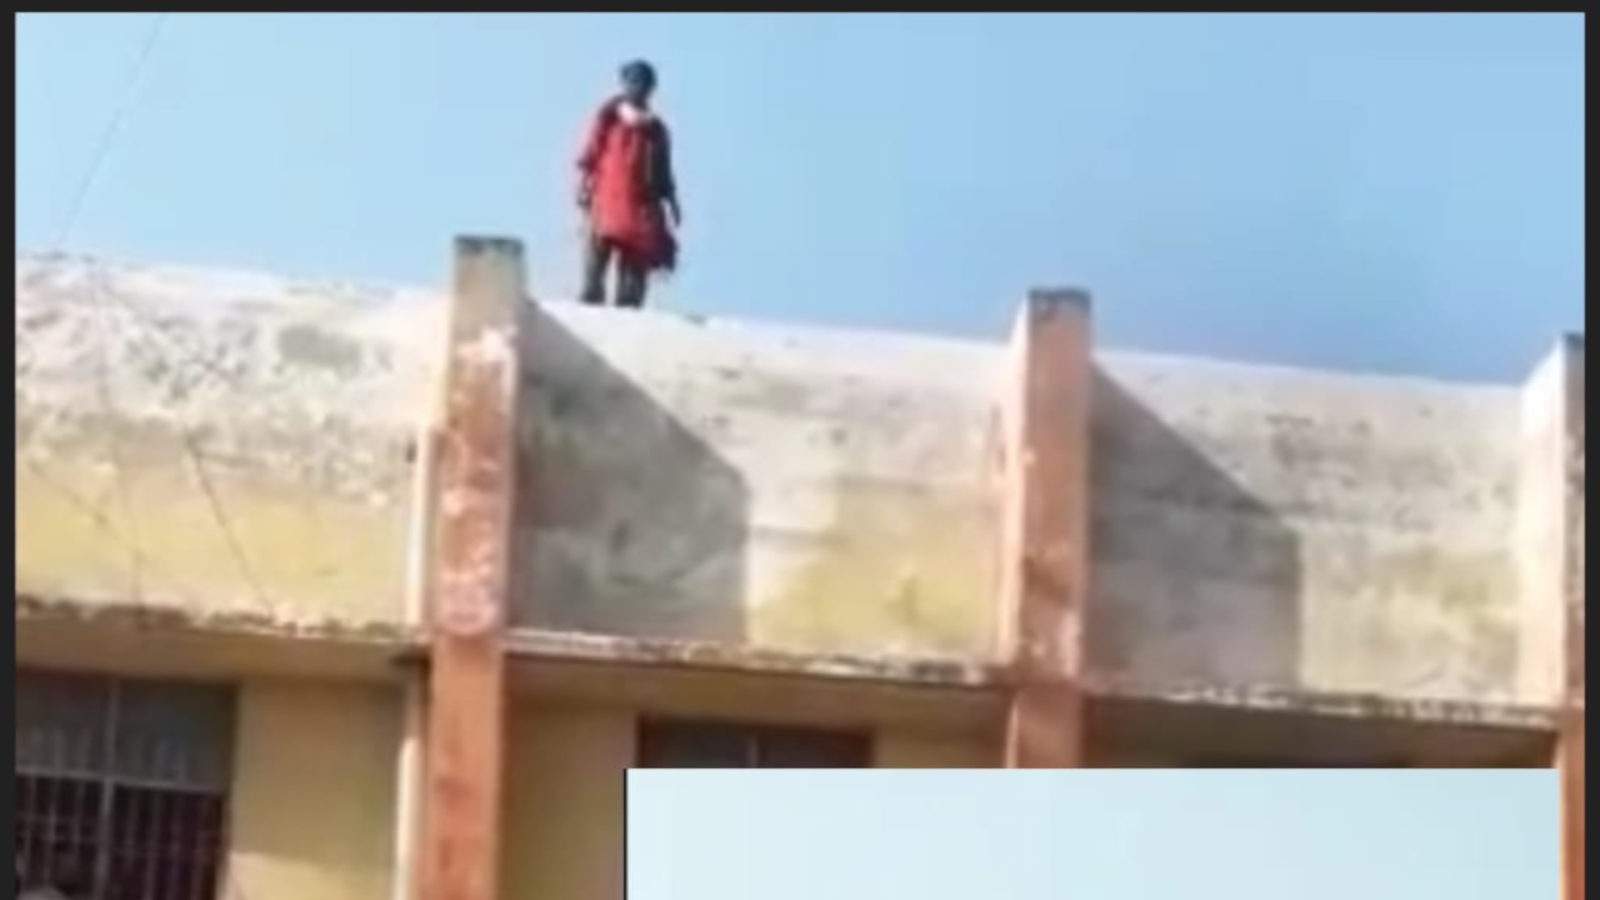 Korba News: सुसाइड करने कोर्ट की छत पर चढ़ी महिला, चिल्लाकर कहा- तंग आ गई, पुलिस ने बचाया